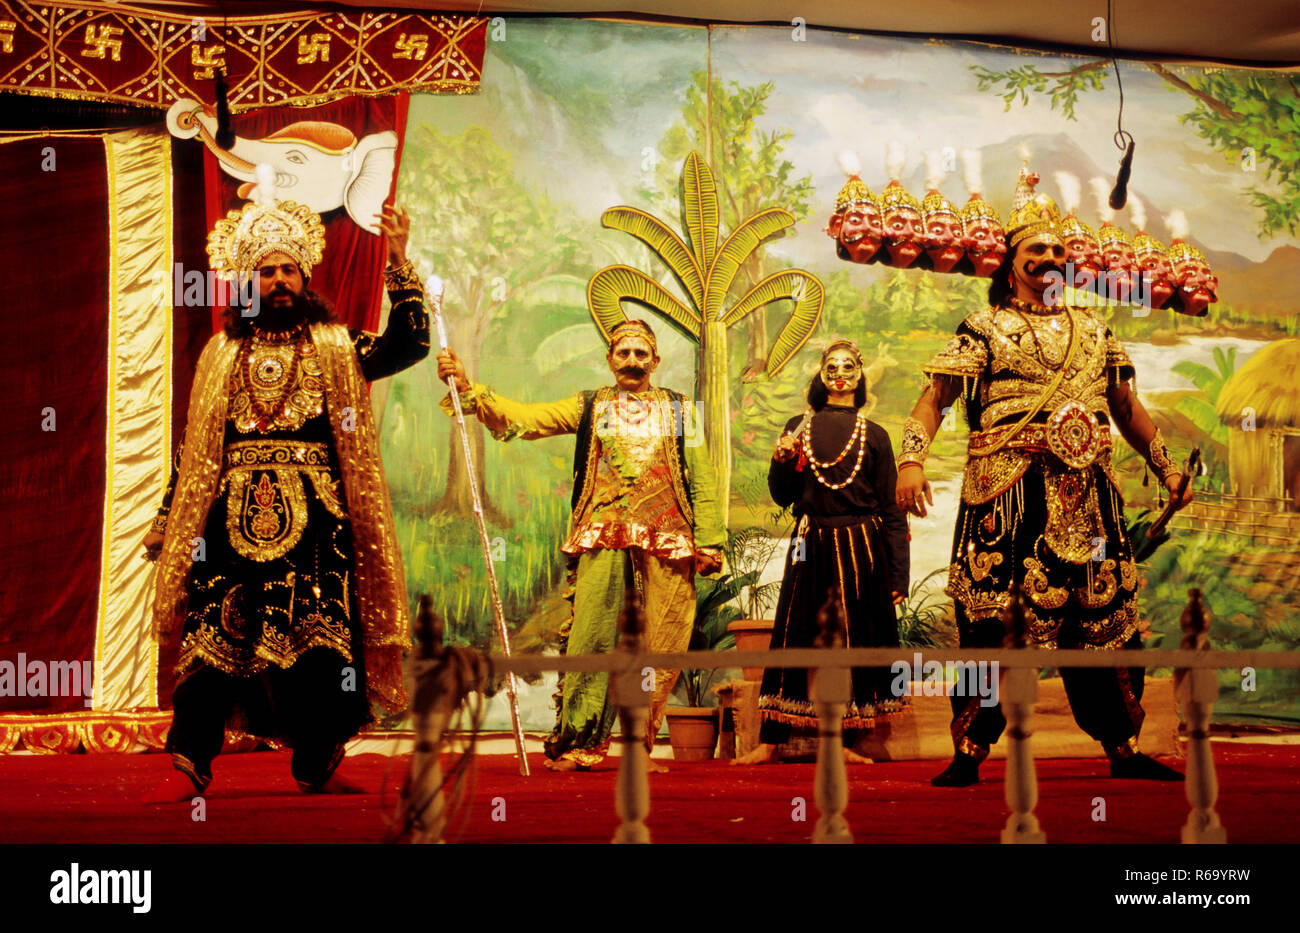 hindu epic ramleela performance on stage with king ravan india Stock Photo